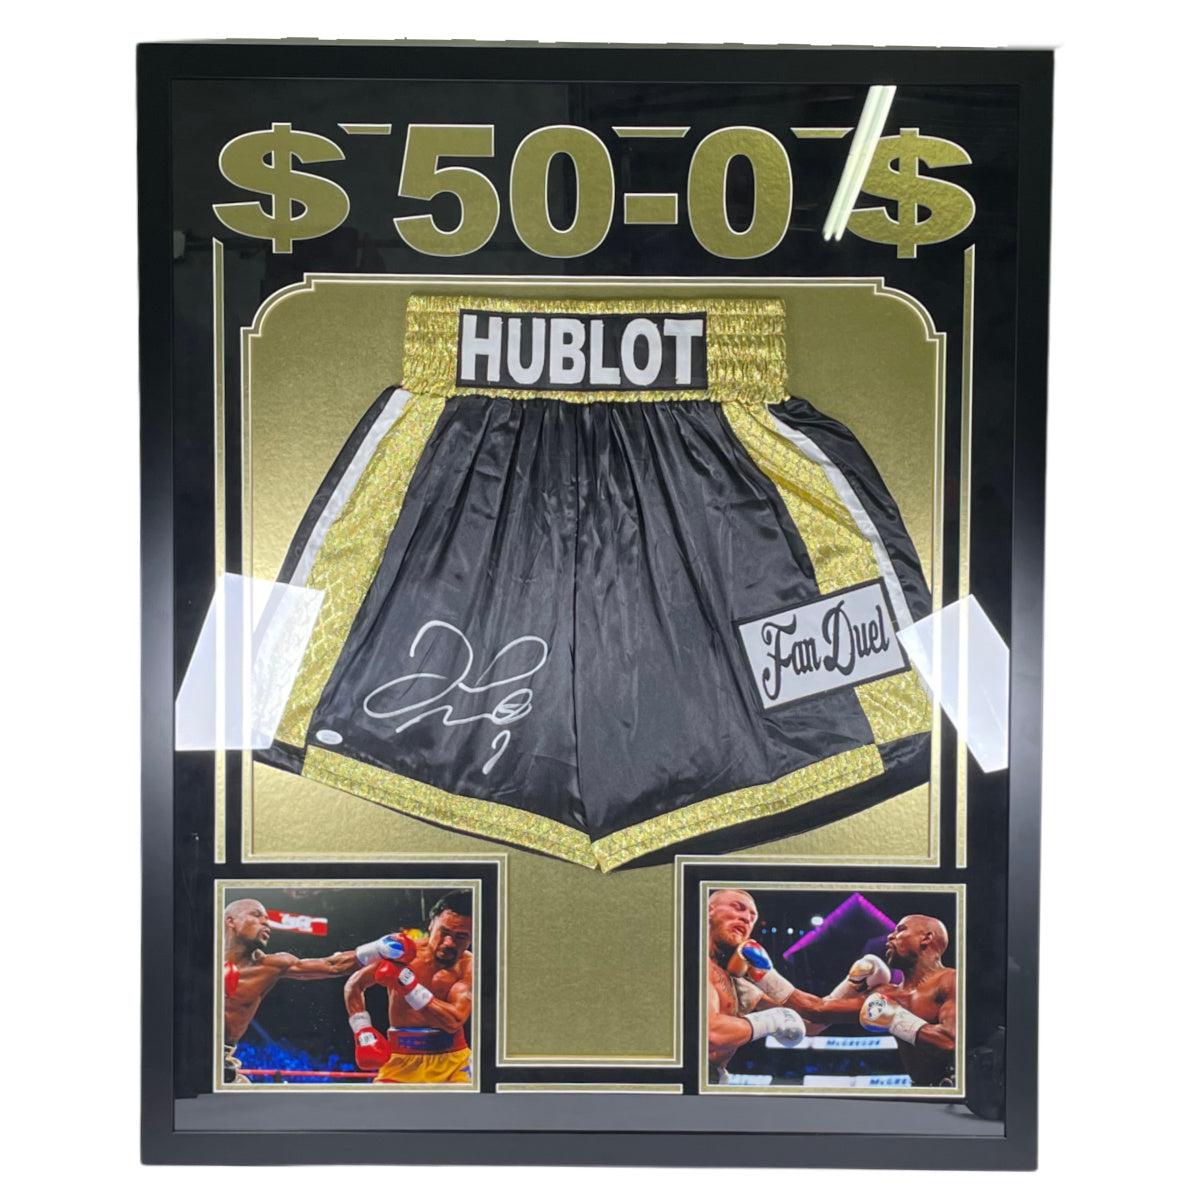 Floyd Money Mayweather Signed Boxing Trunks Custom Framed Autographed JSA COA